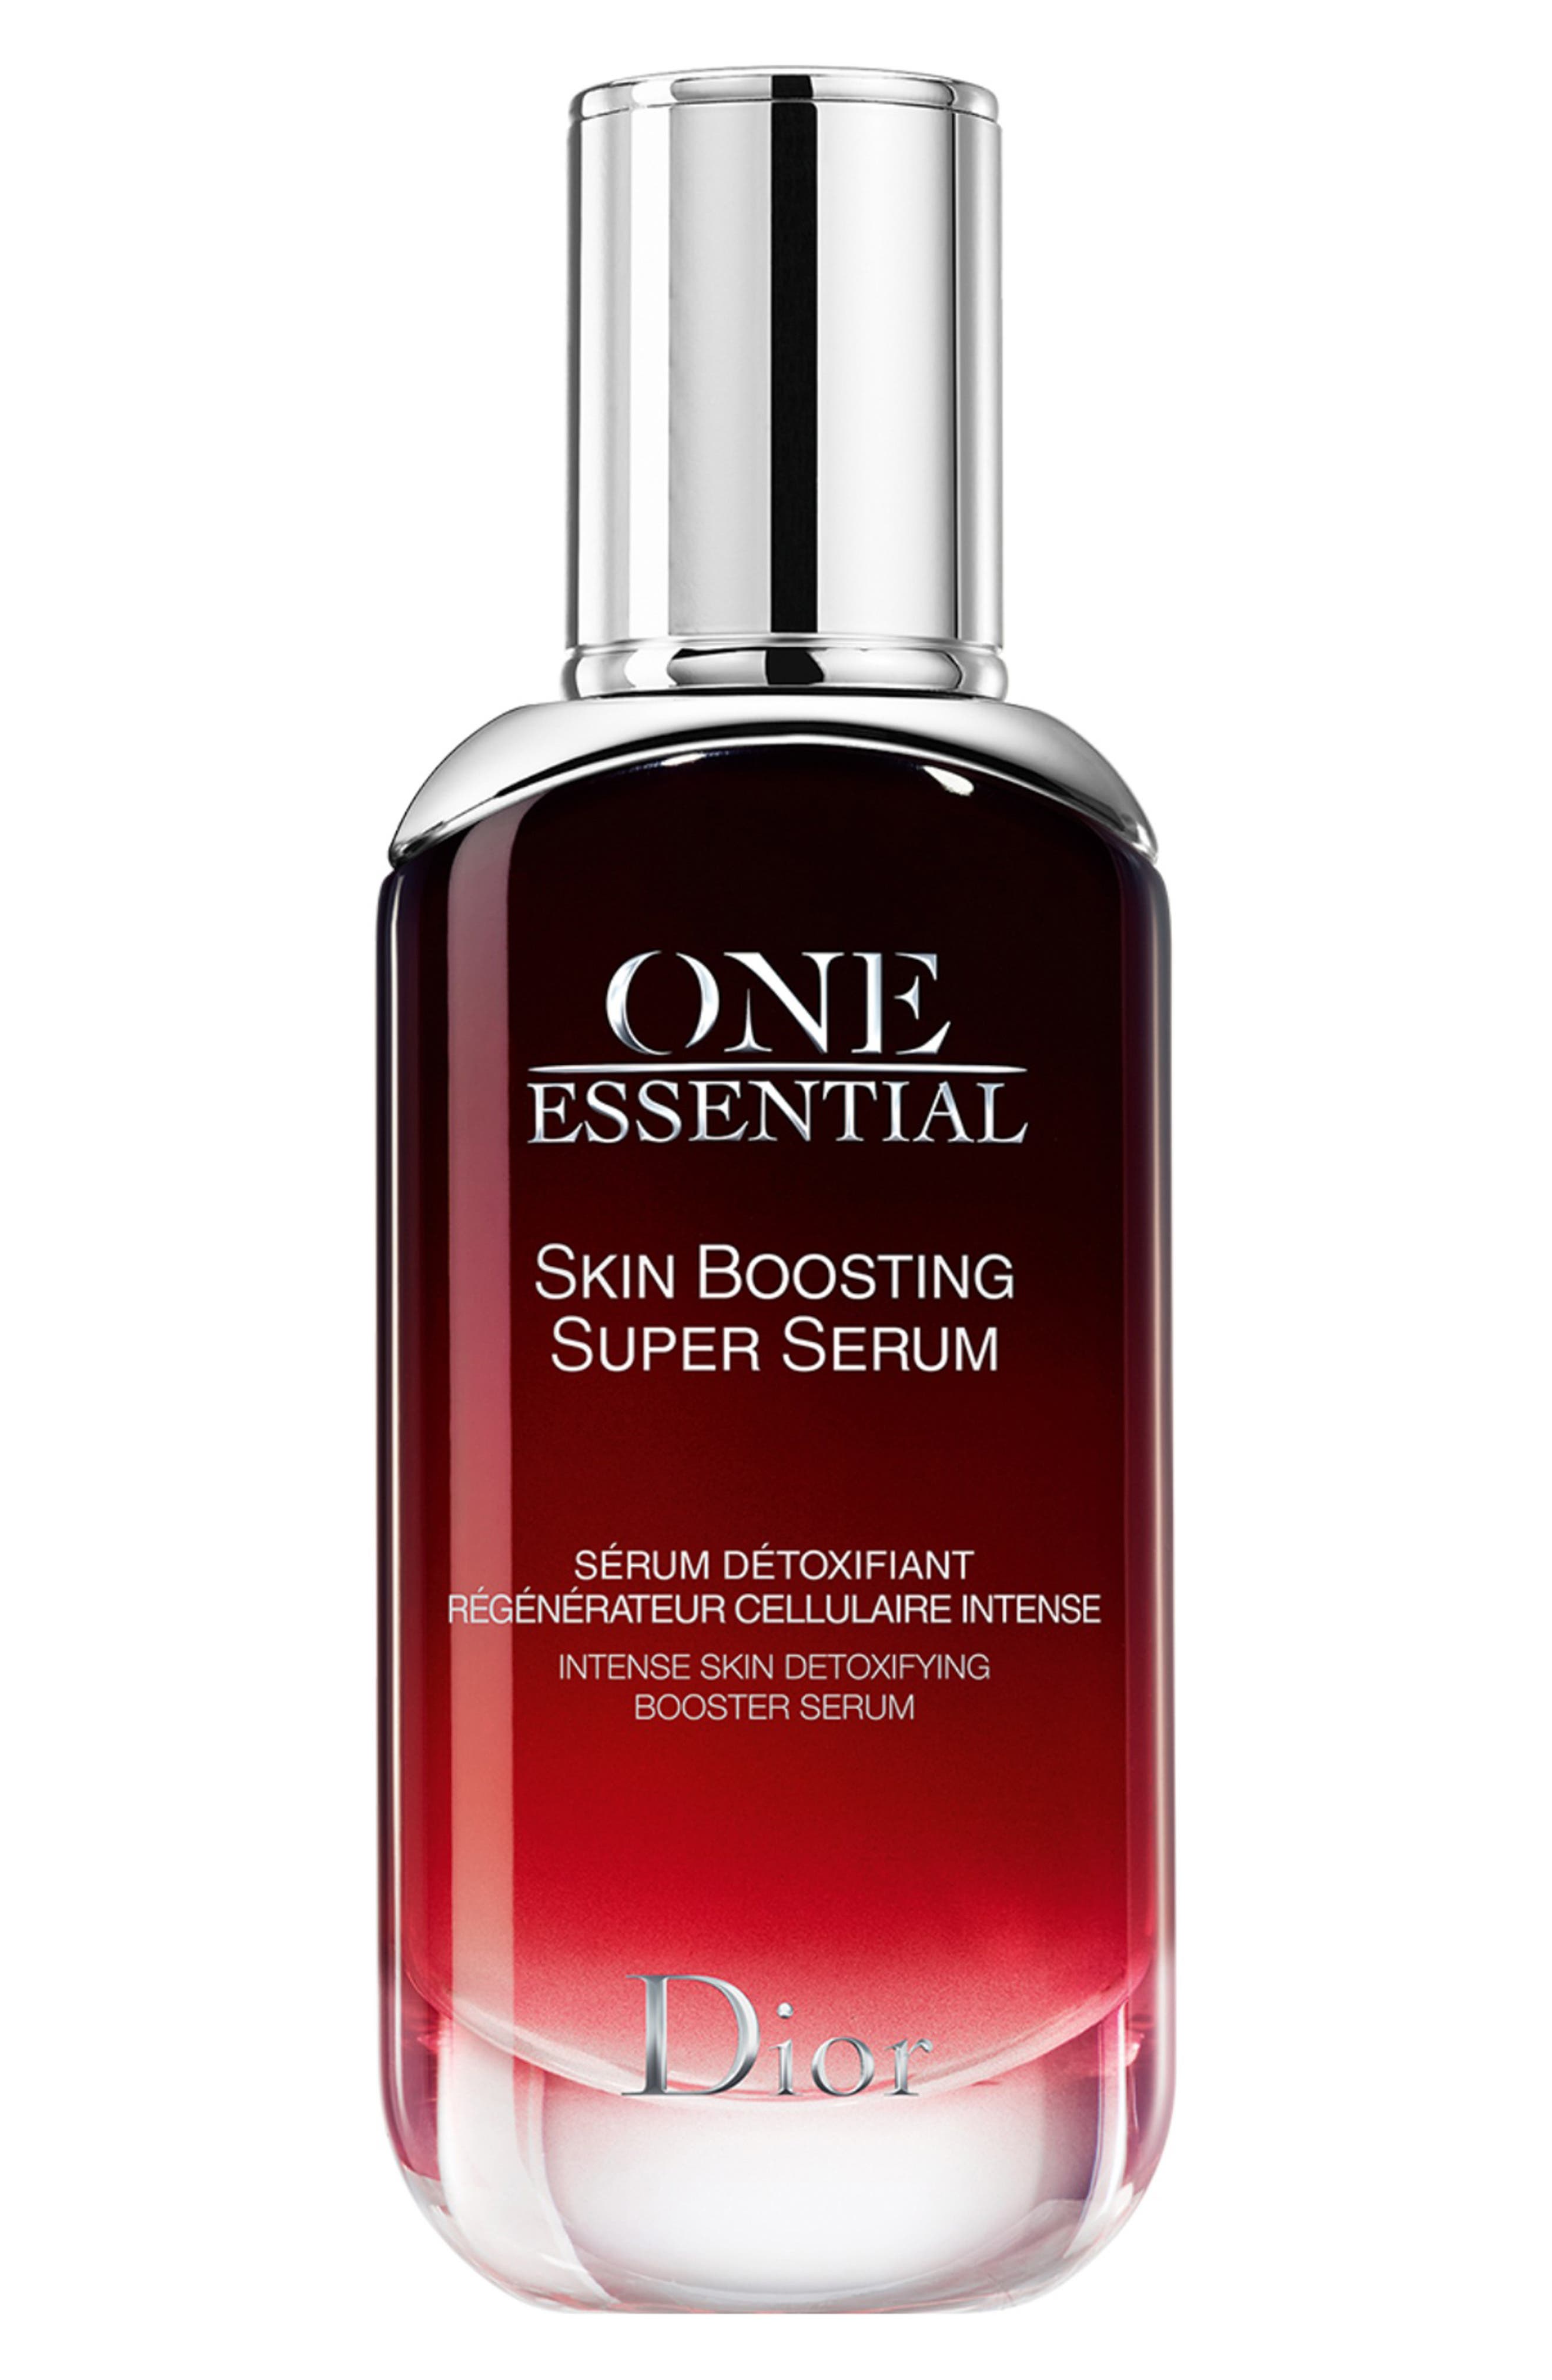 one essential skin boosting super serum dior